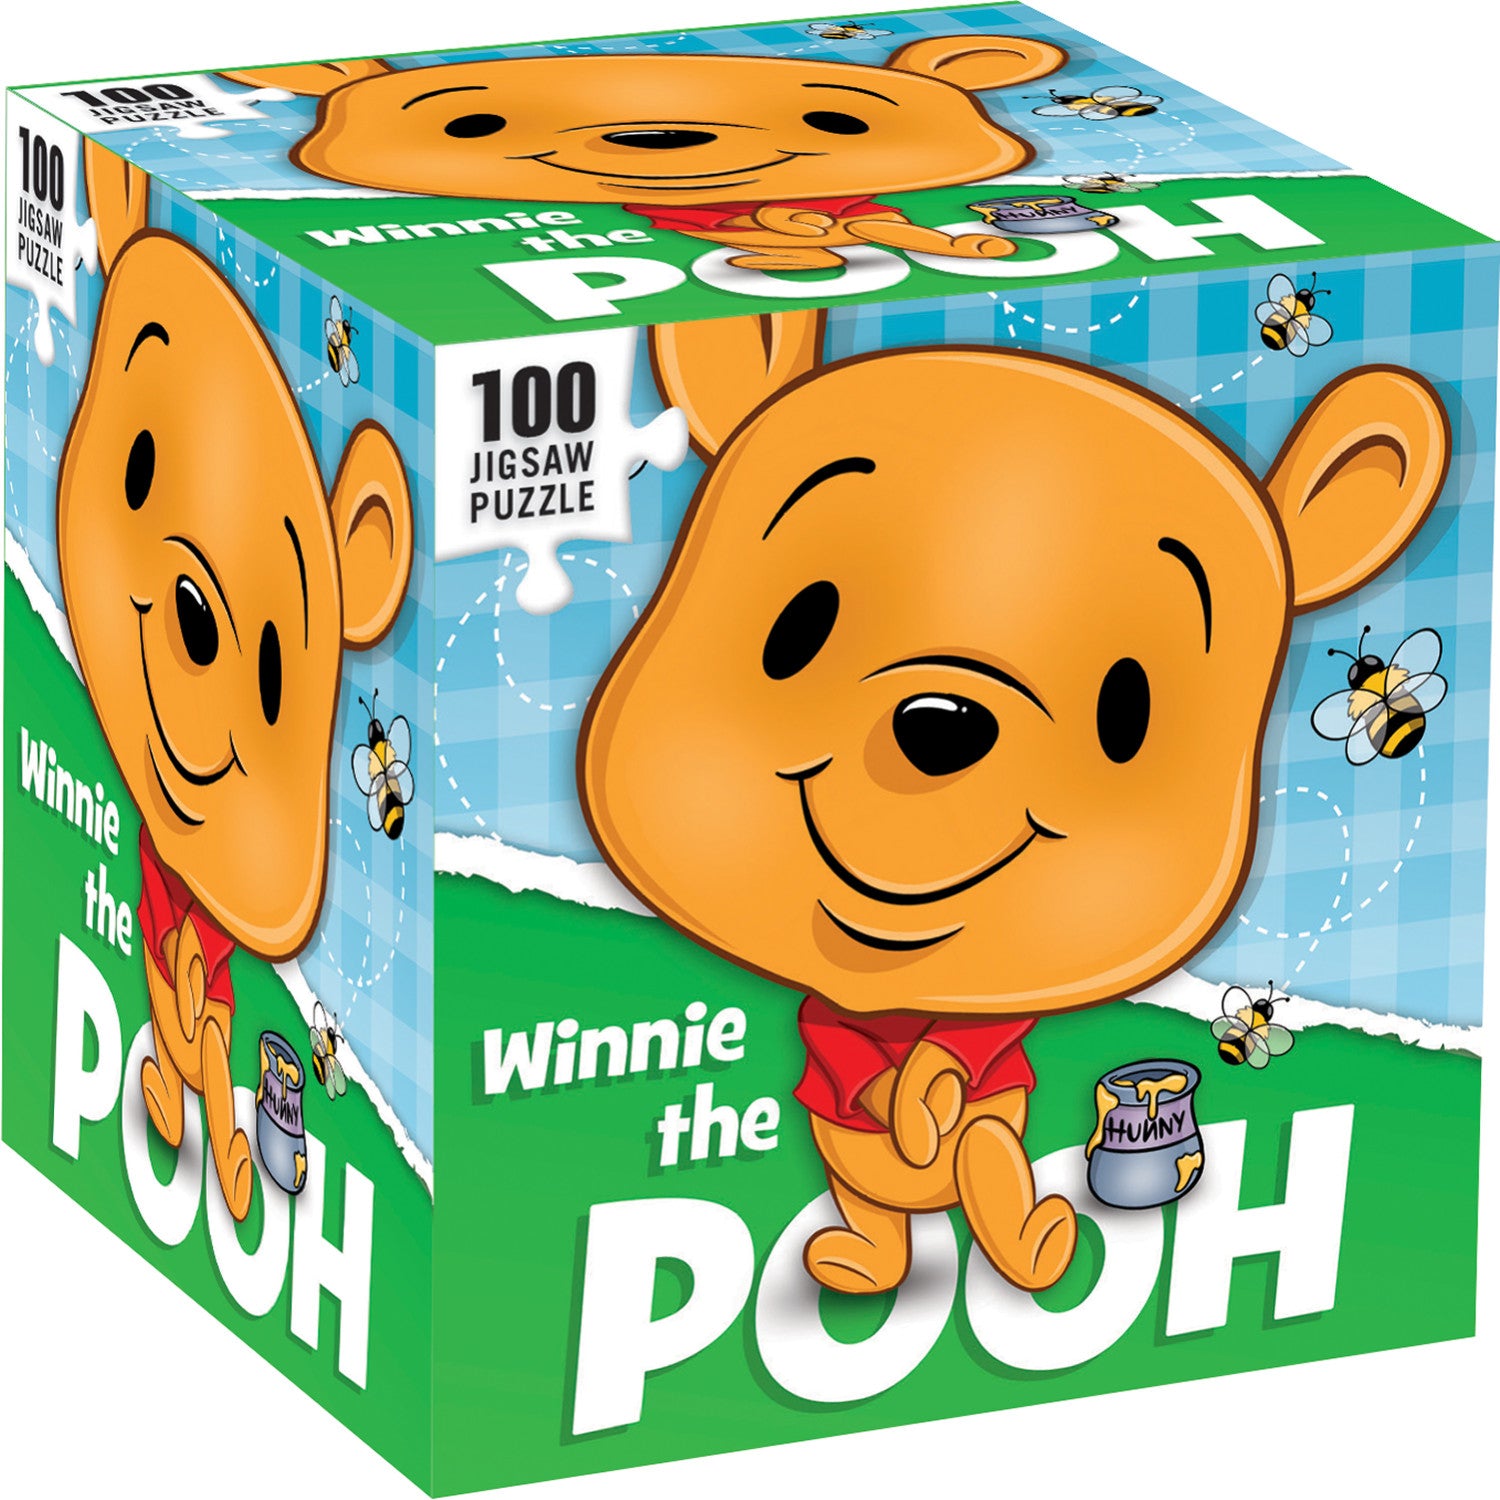 Winnie the Pooh 100 Piece Jigsaw Puzzle